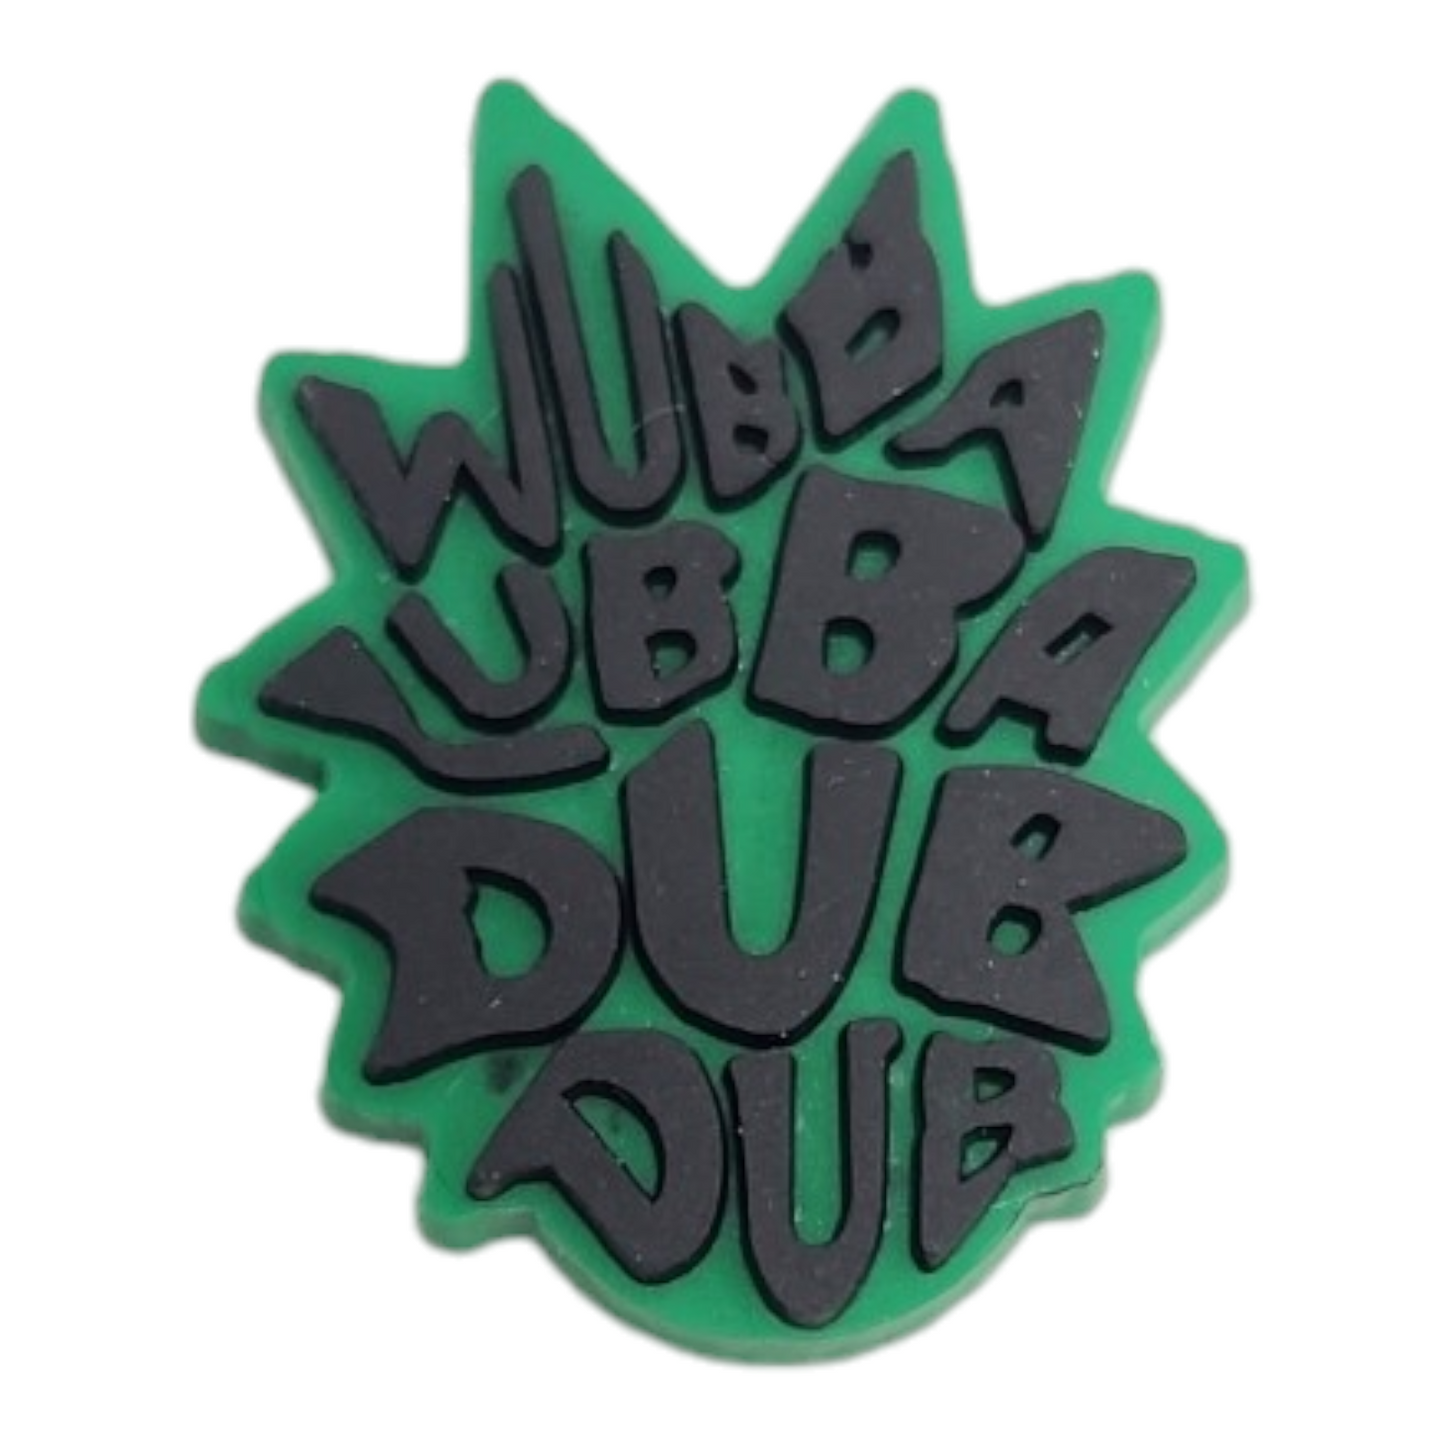 Wubba Lubba Dub Dub Shoe Croc Charm - Homeware Discounts